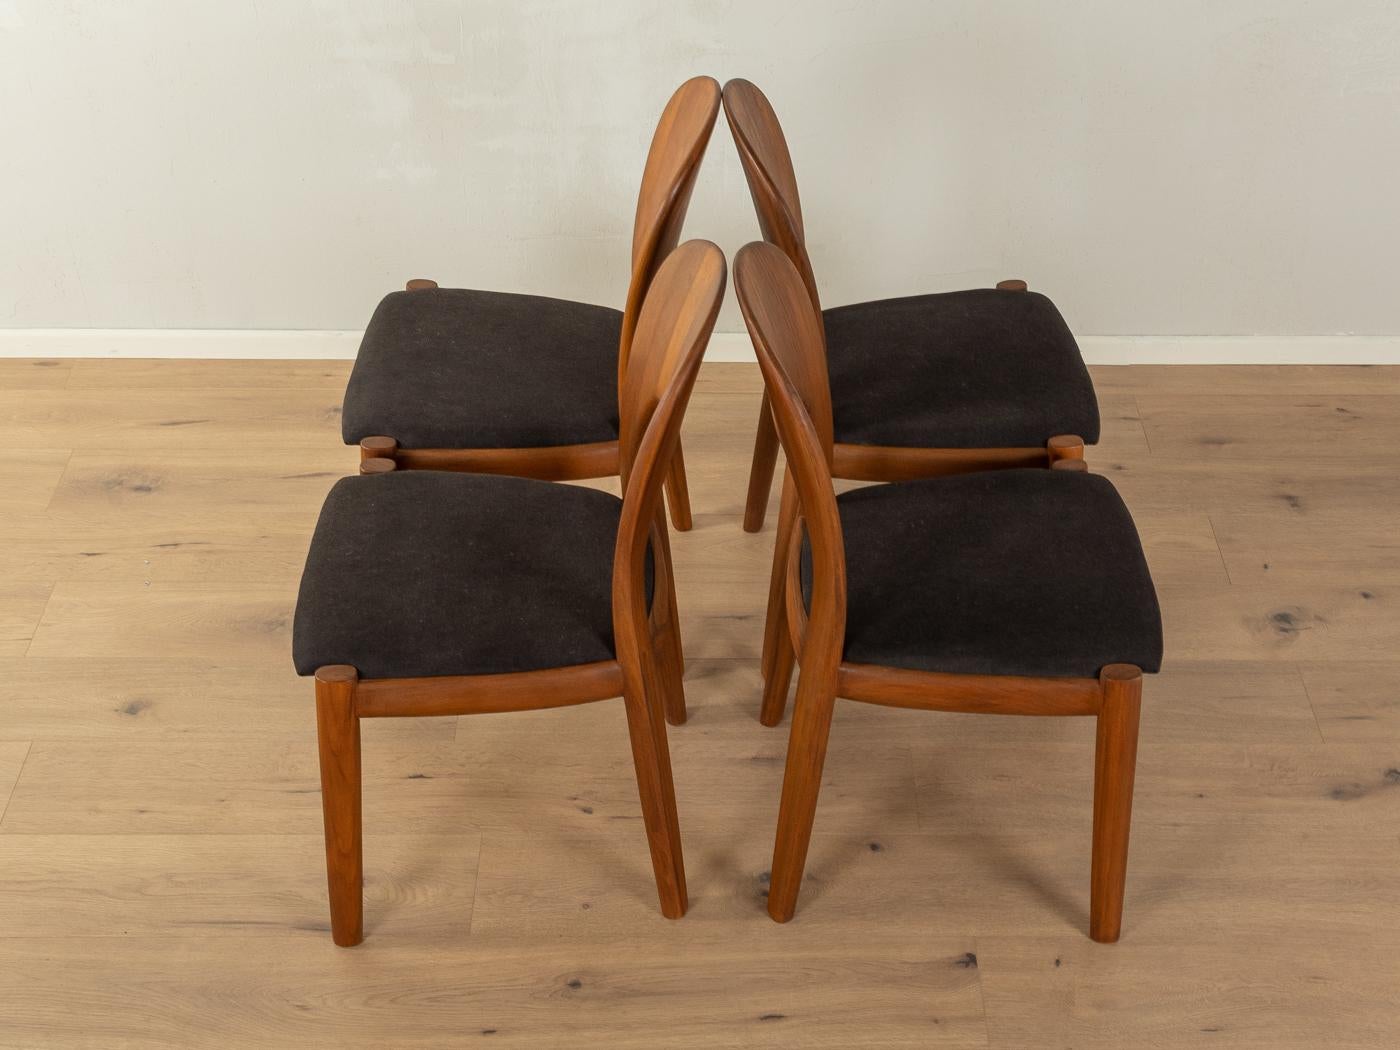 Chaises de salle à manger classiques des années 1960 par Niels Koefoed pour Koefoed's Hornslet. Cadre solide en teck. Les chaises ont été retapissées et recouvertes d'un tissu d'ameublement noir de haute qualité. L'offre comprend quatre